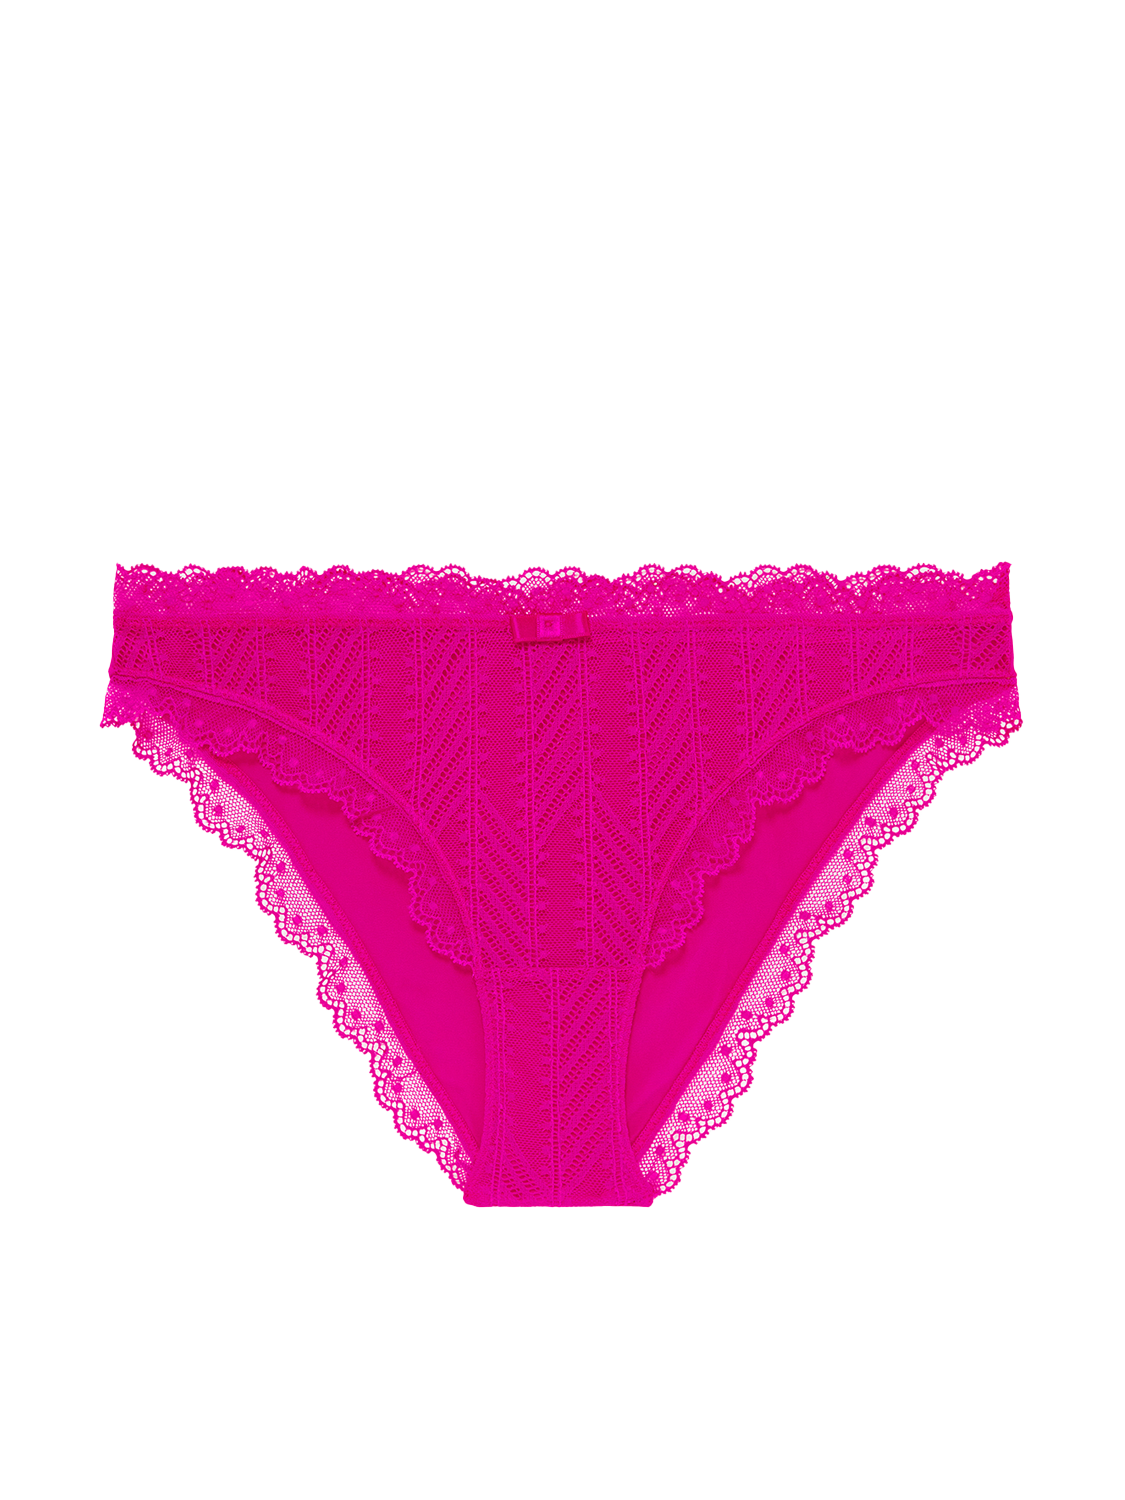 Progressive brief - Hibiscus Pink